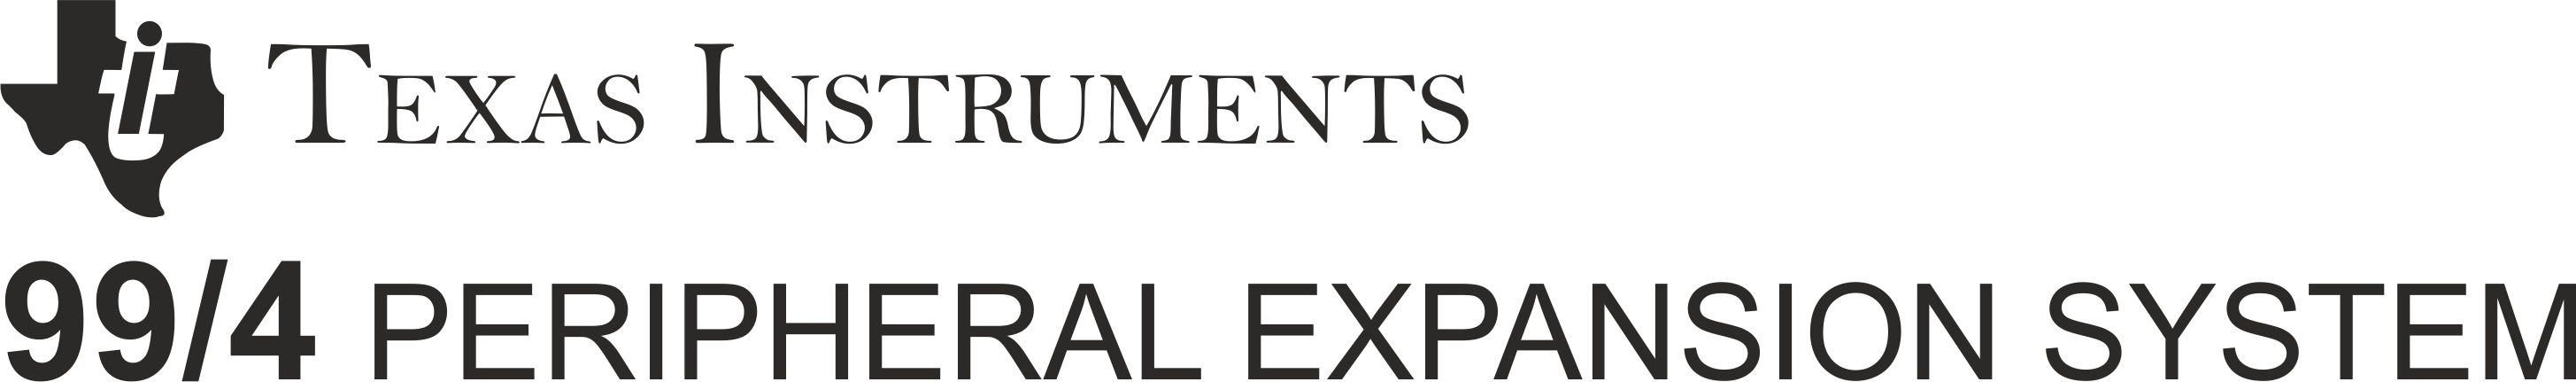 Texas Instruments PHP1200 (PEB): logo